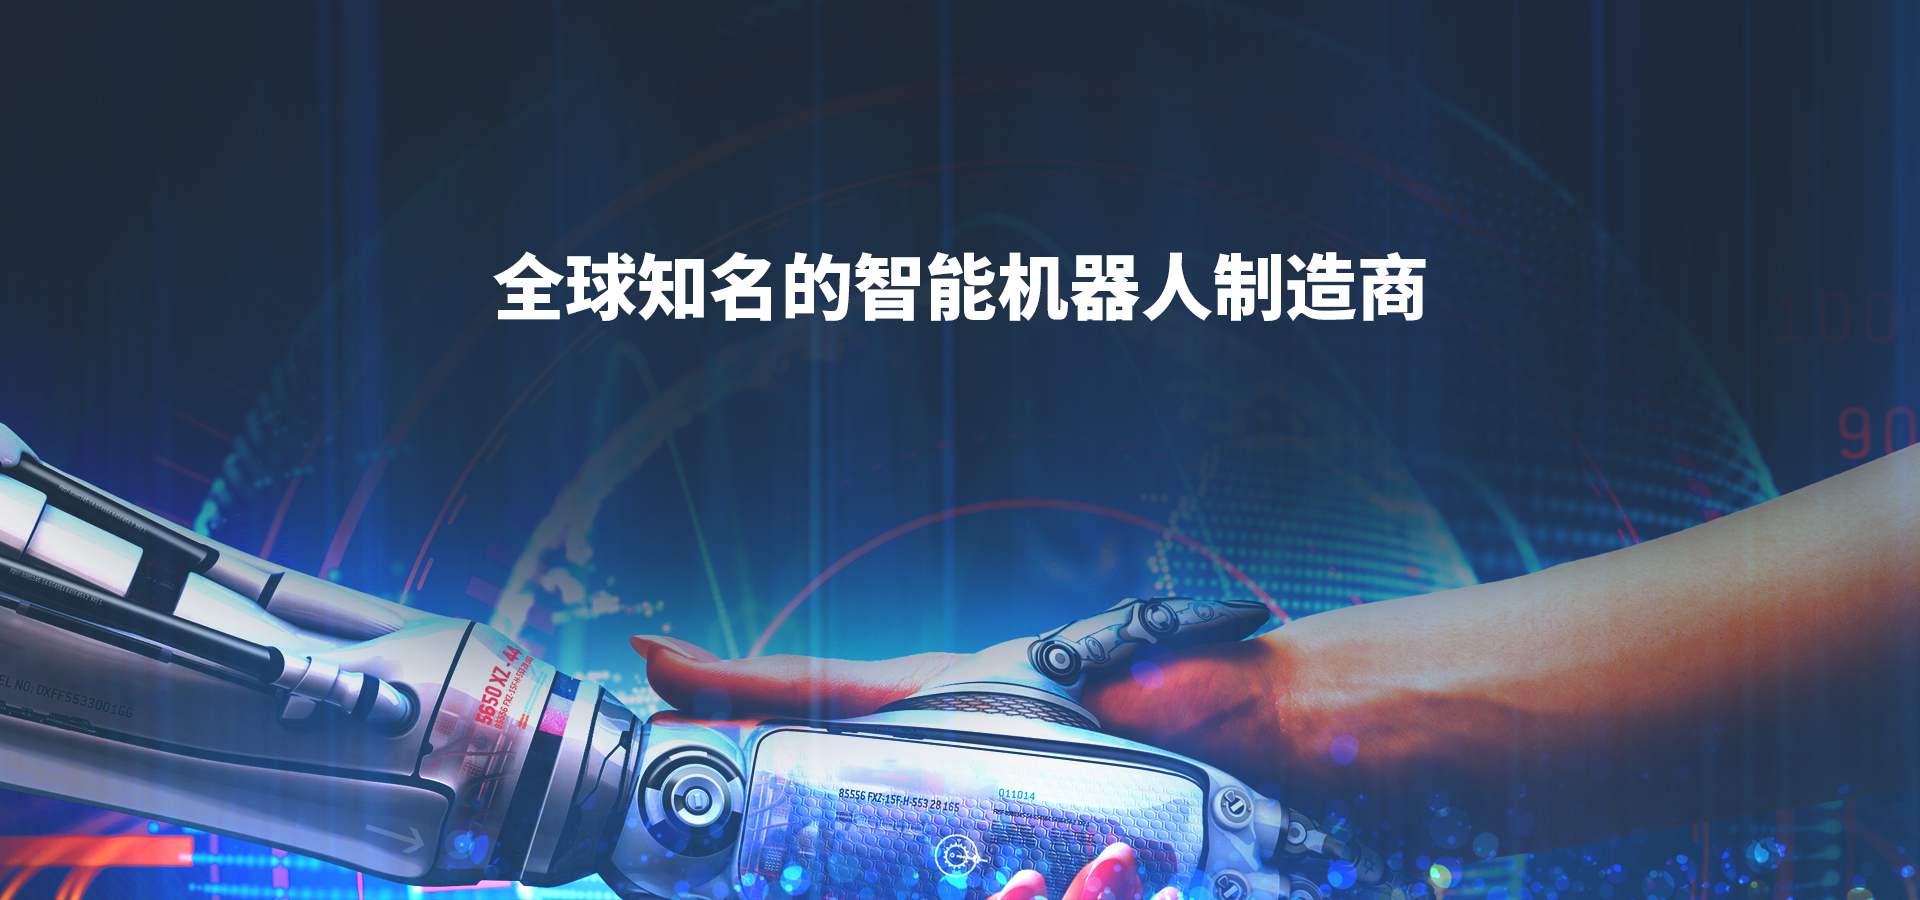 4-全球知名的智能机器人制造商-中文.jpg